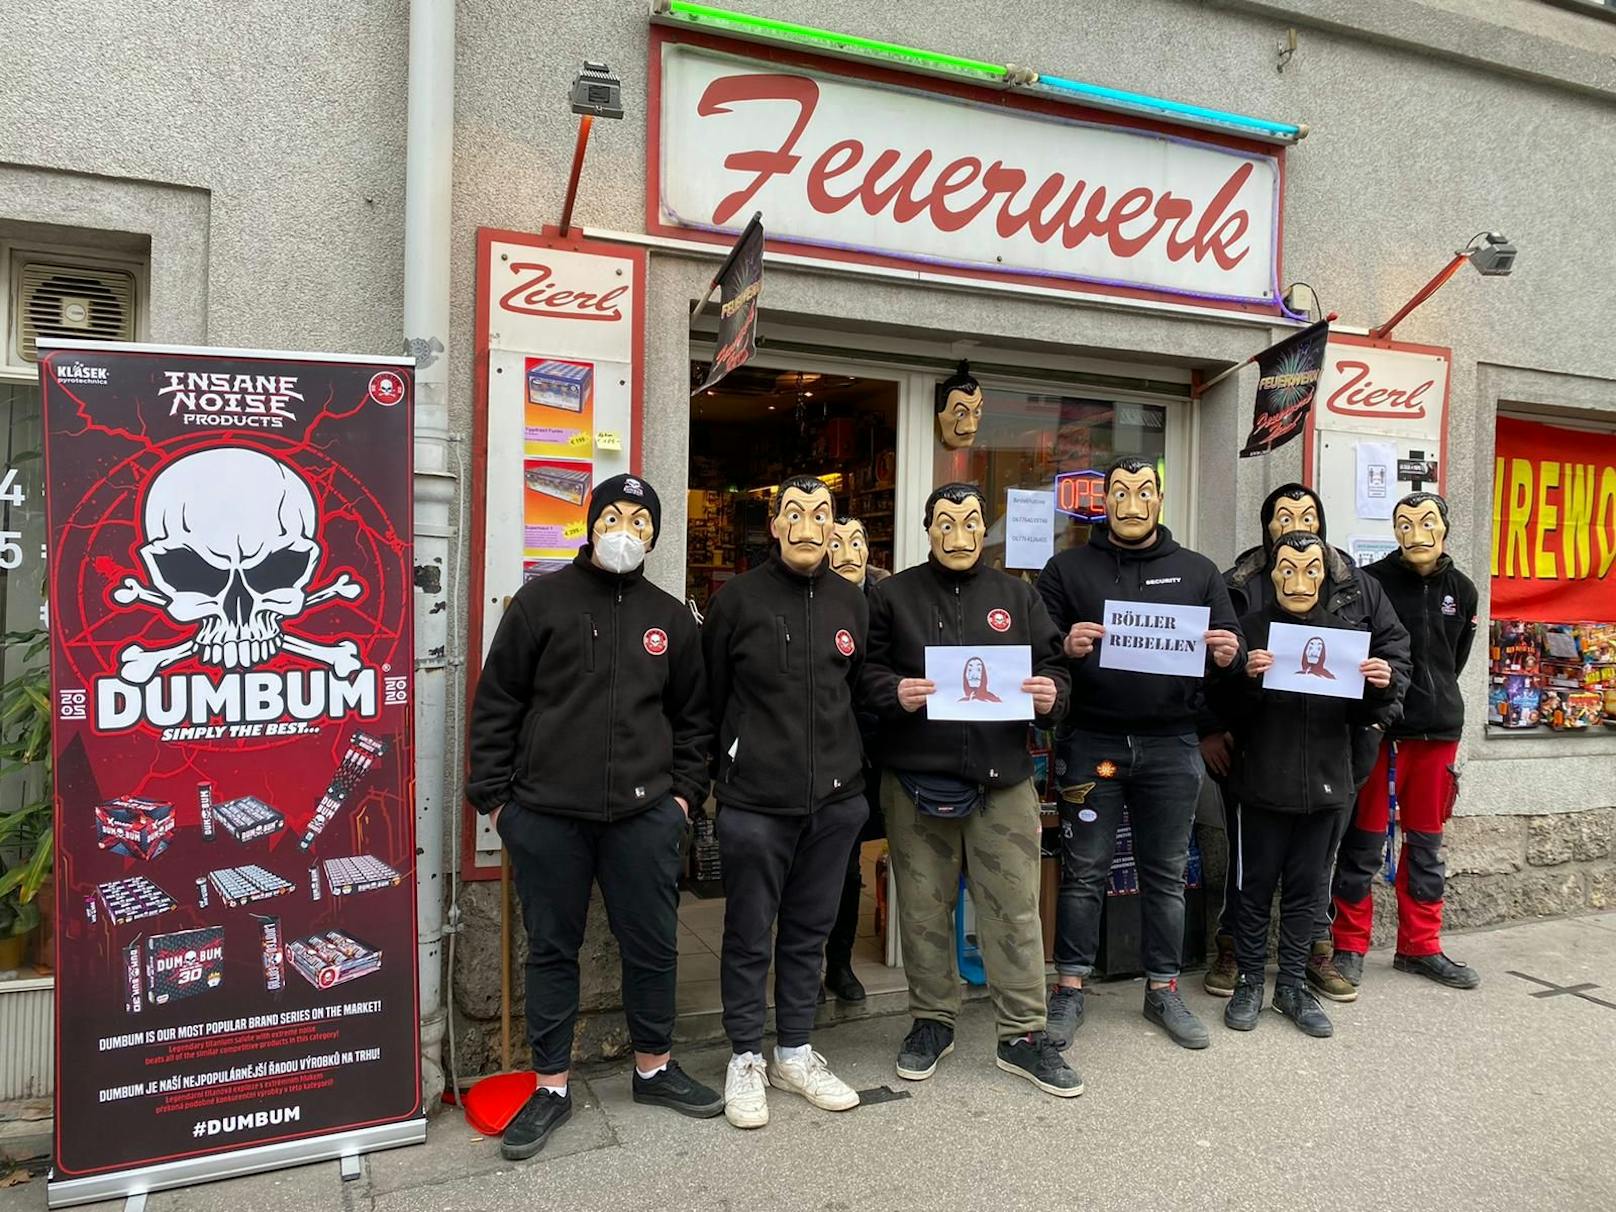 Die Böller-Rebellen aus dem Wiener Gemeindebau: "Wir sind keine Gesetzesbrecher."